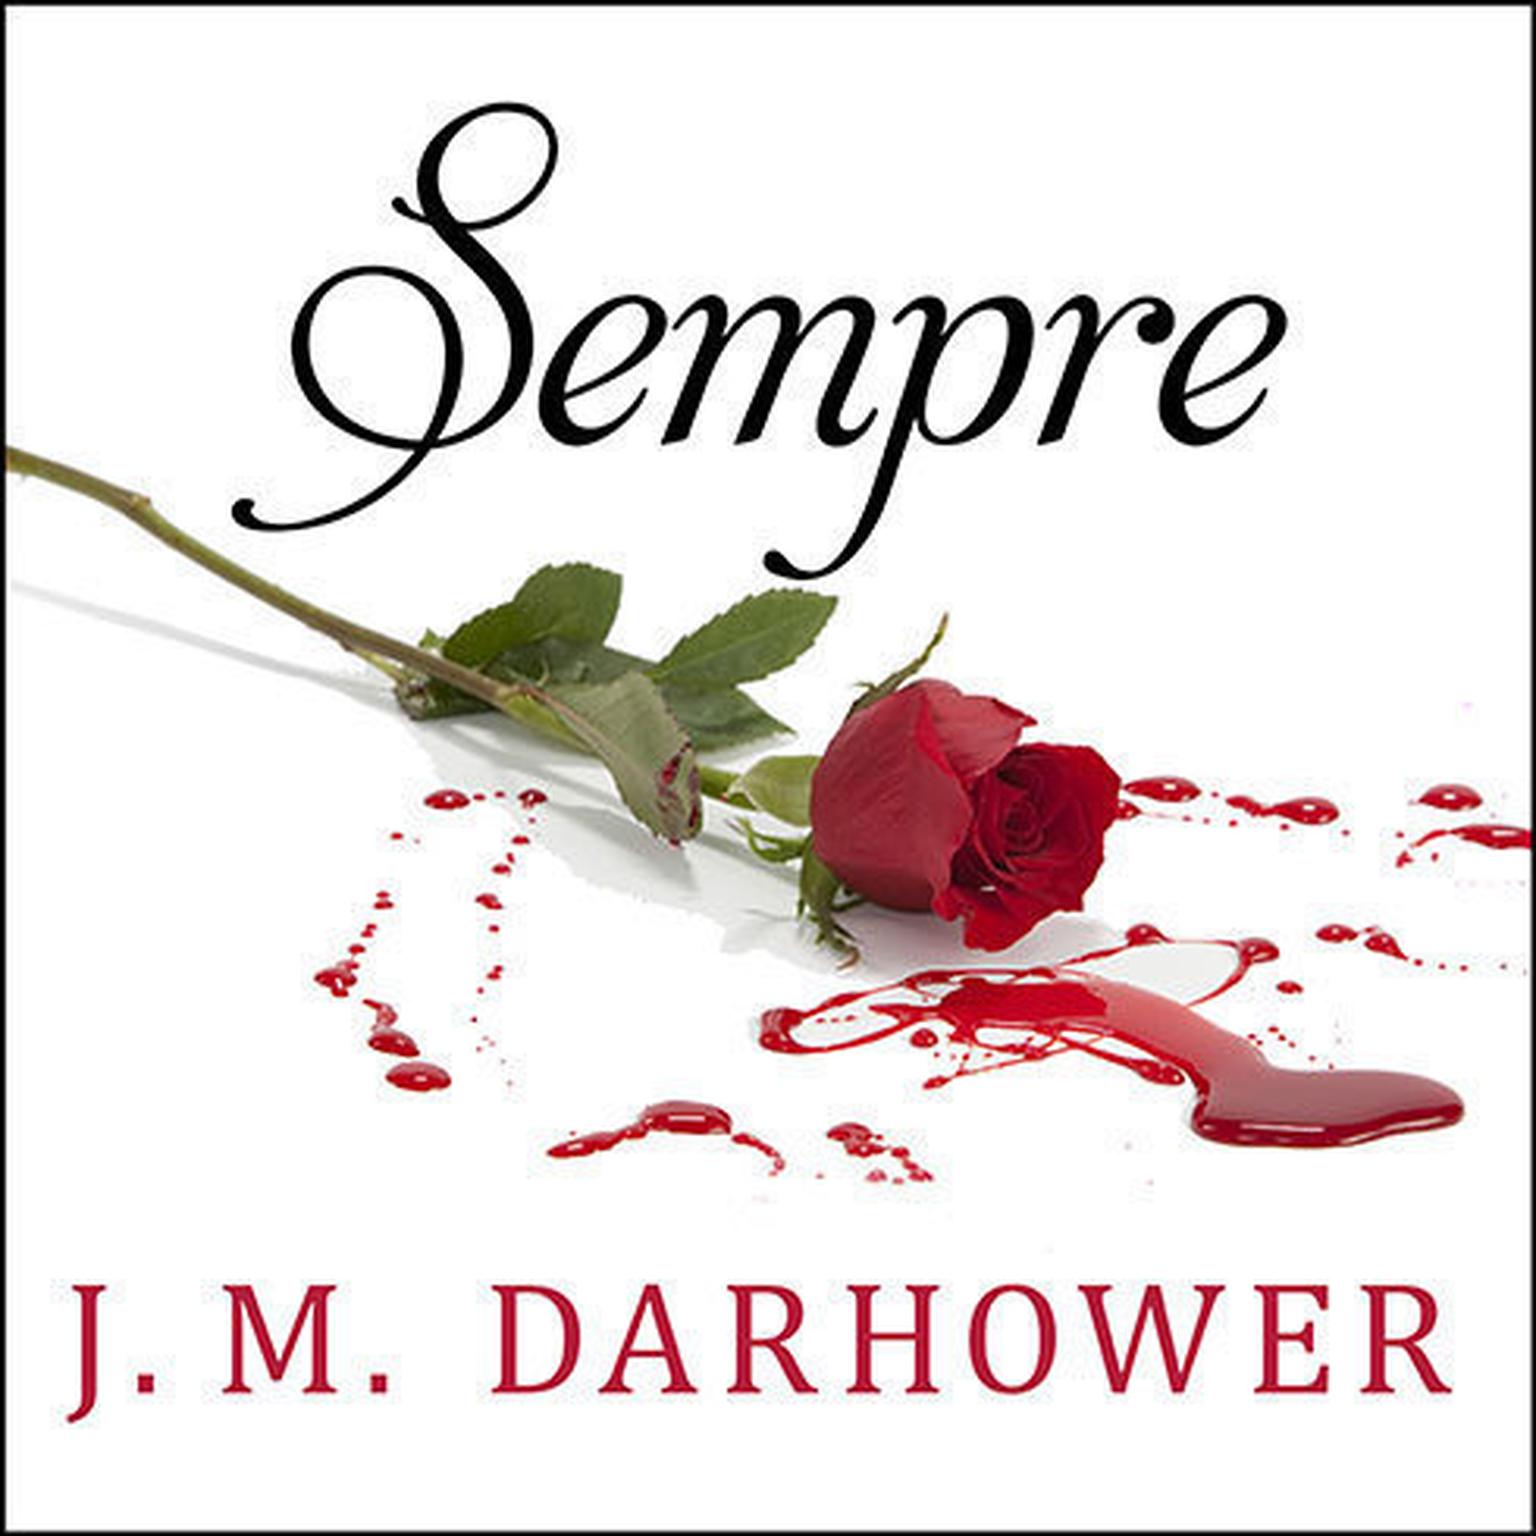 Sempre: Redemption Audiobook, by J. M. Darhower